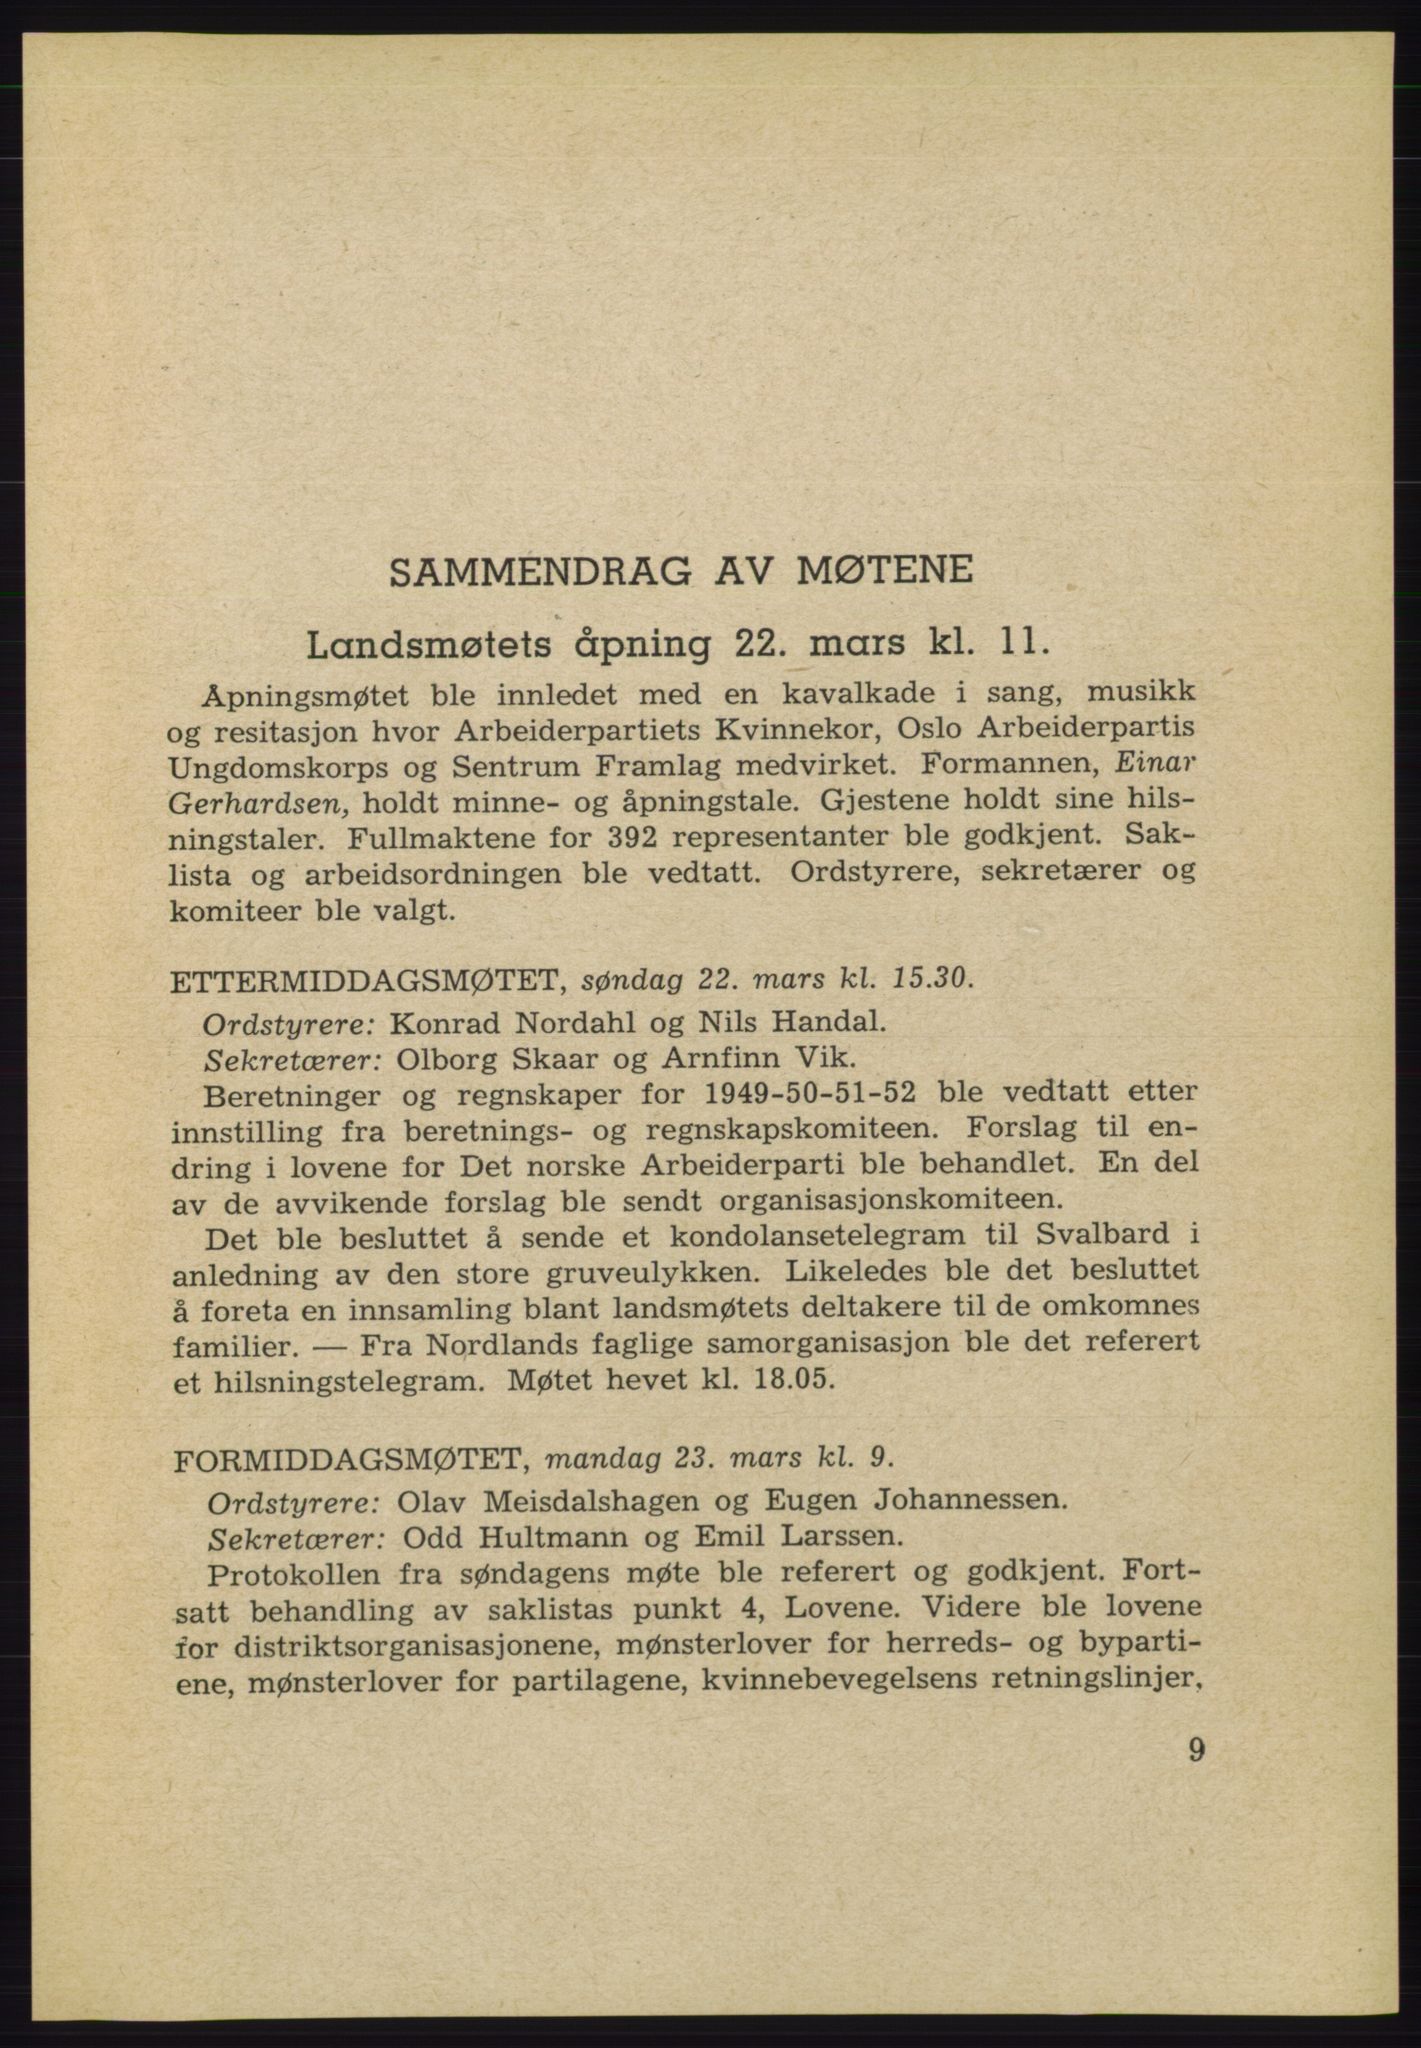 Det norske Arbeiderparti - publikasjoner, AAB/-/-/-: Protokoll over forhandlingene på det 34. ordinære landsmøte 22.-25. mars 1953 i Oslo, 1953, p. 9